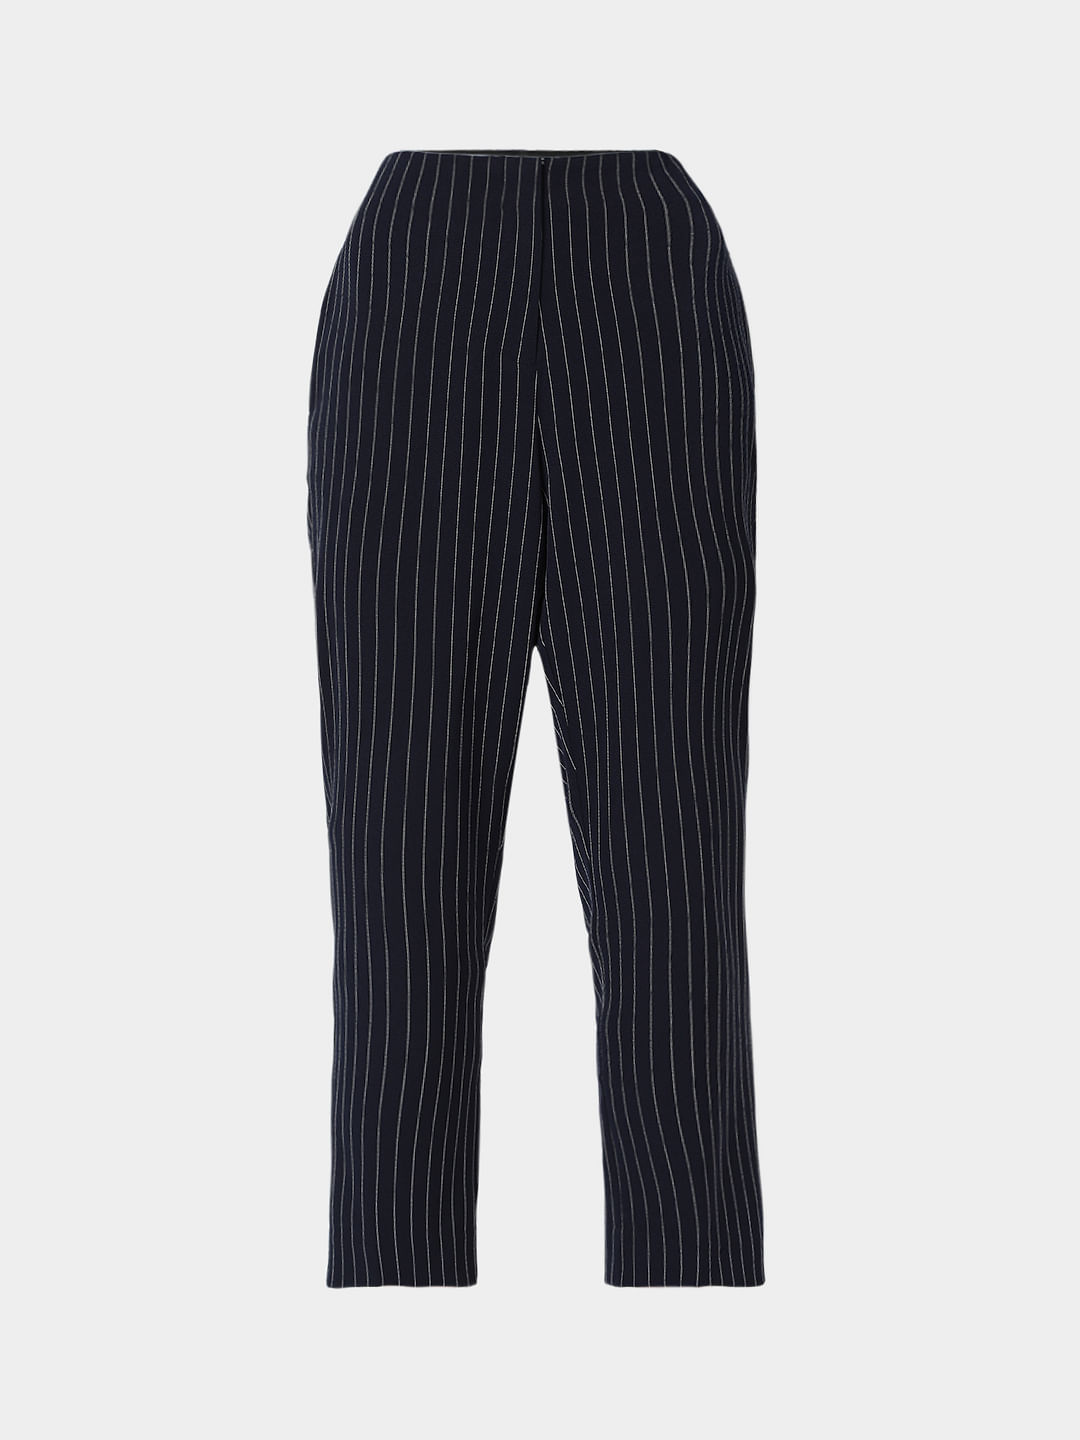 Buy Women Navy Blue  White Regular Fit Striped Regular Trousers online   Looksgudin